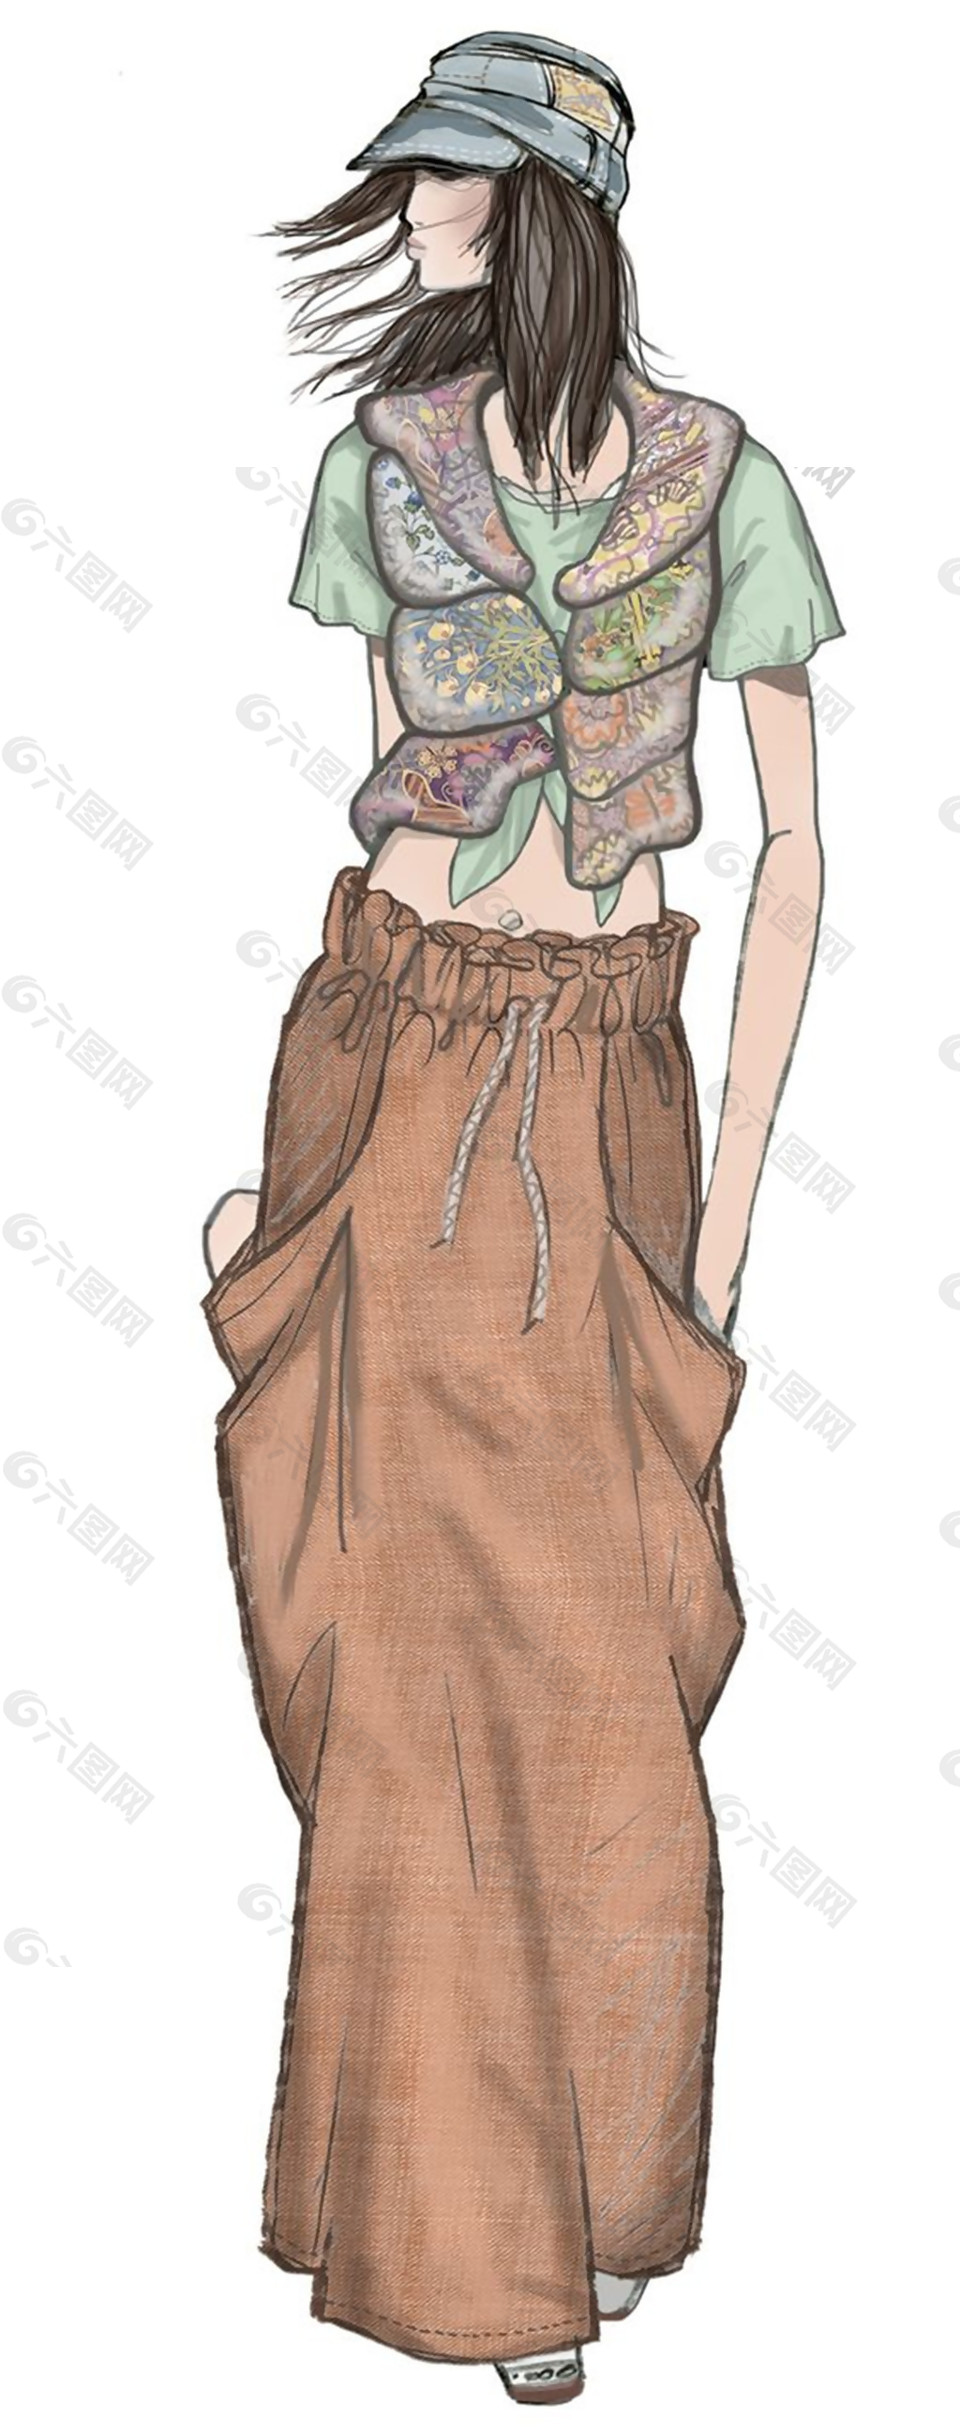 个性民族风拼色短袖女装效果图